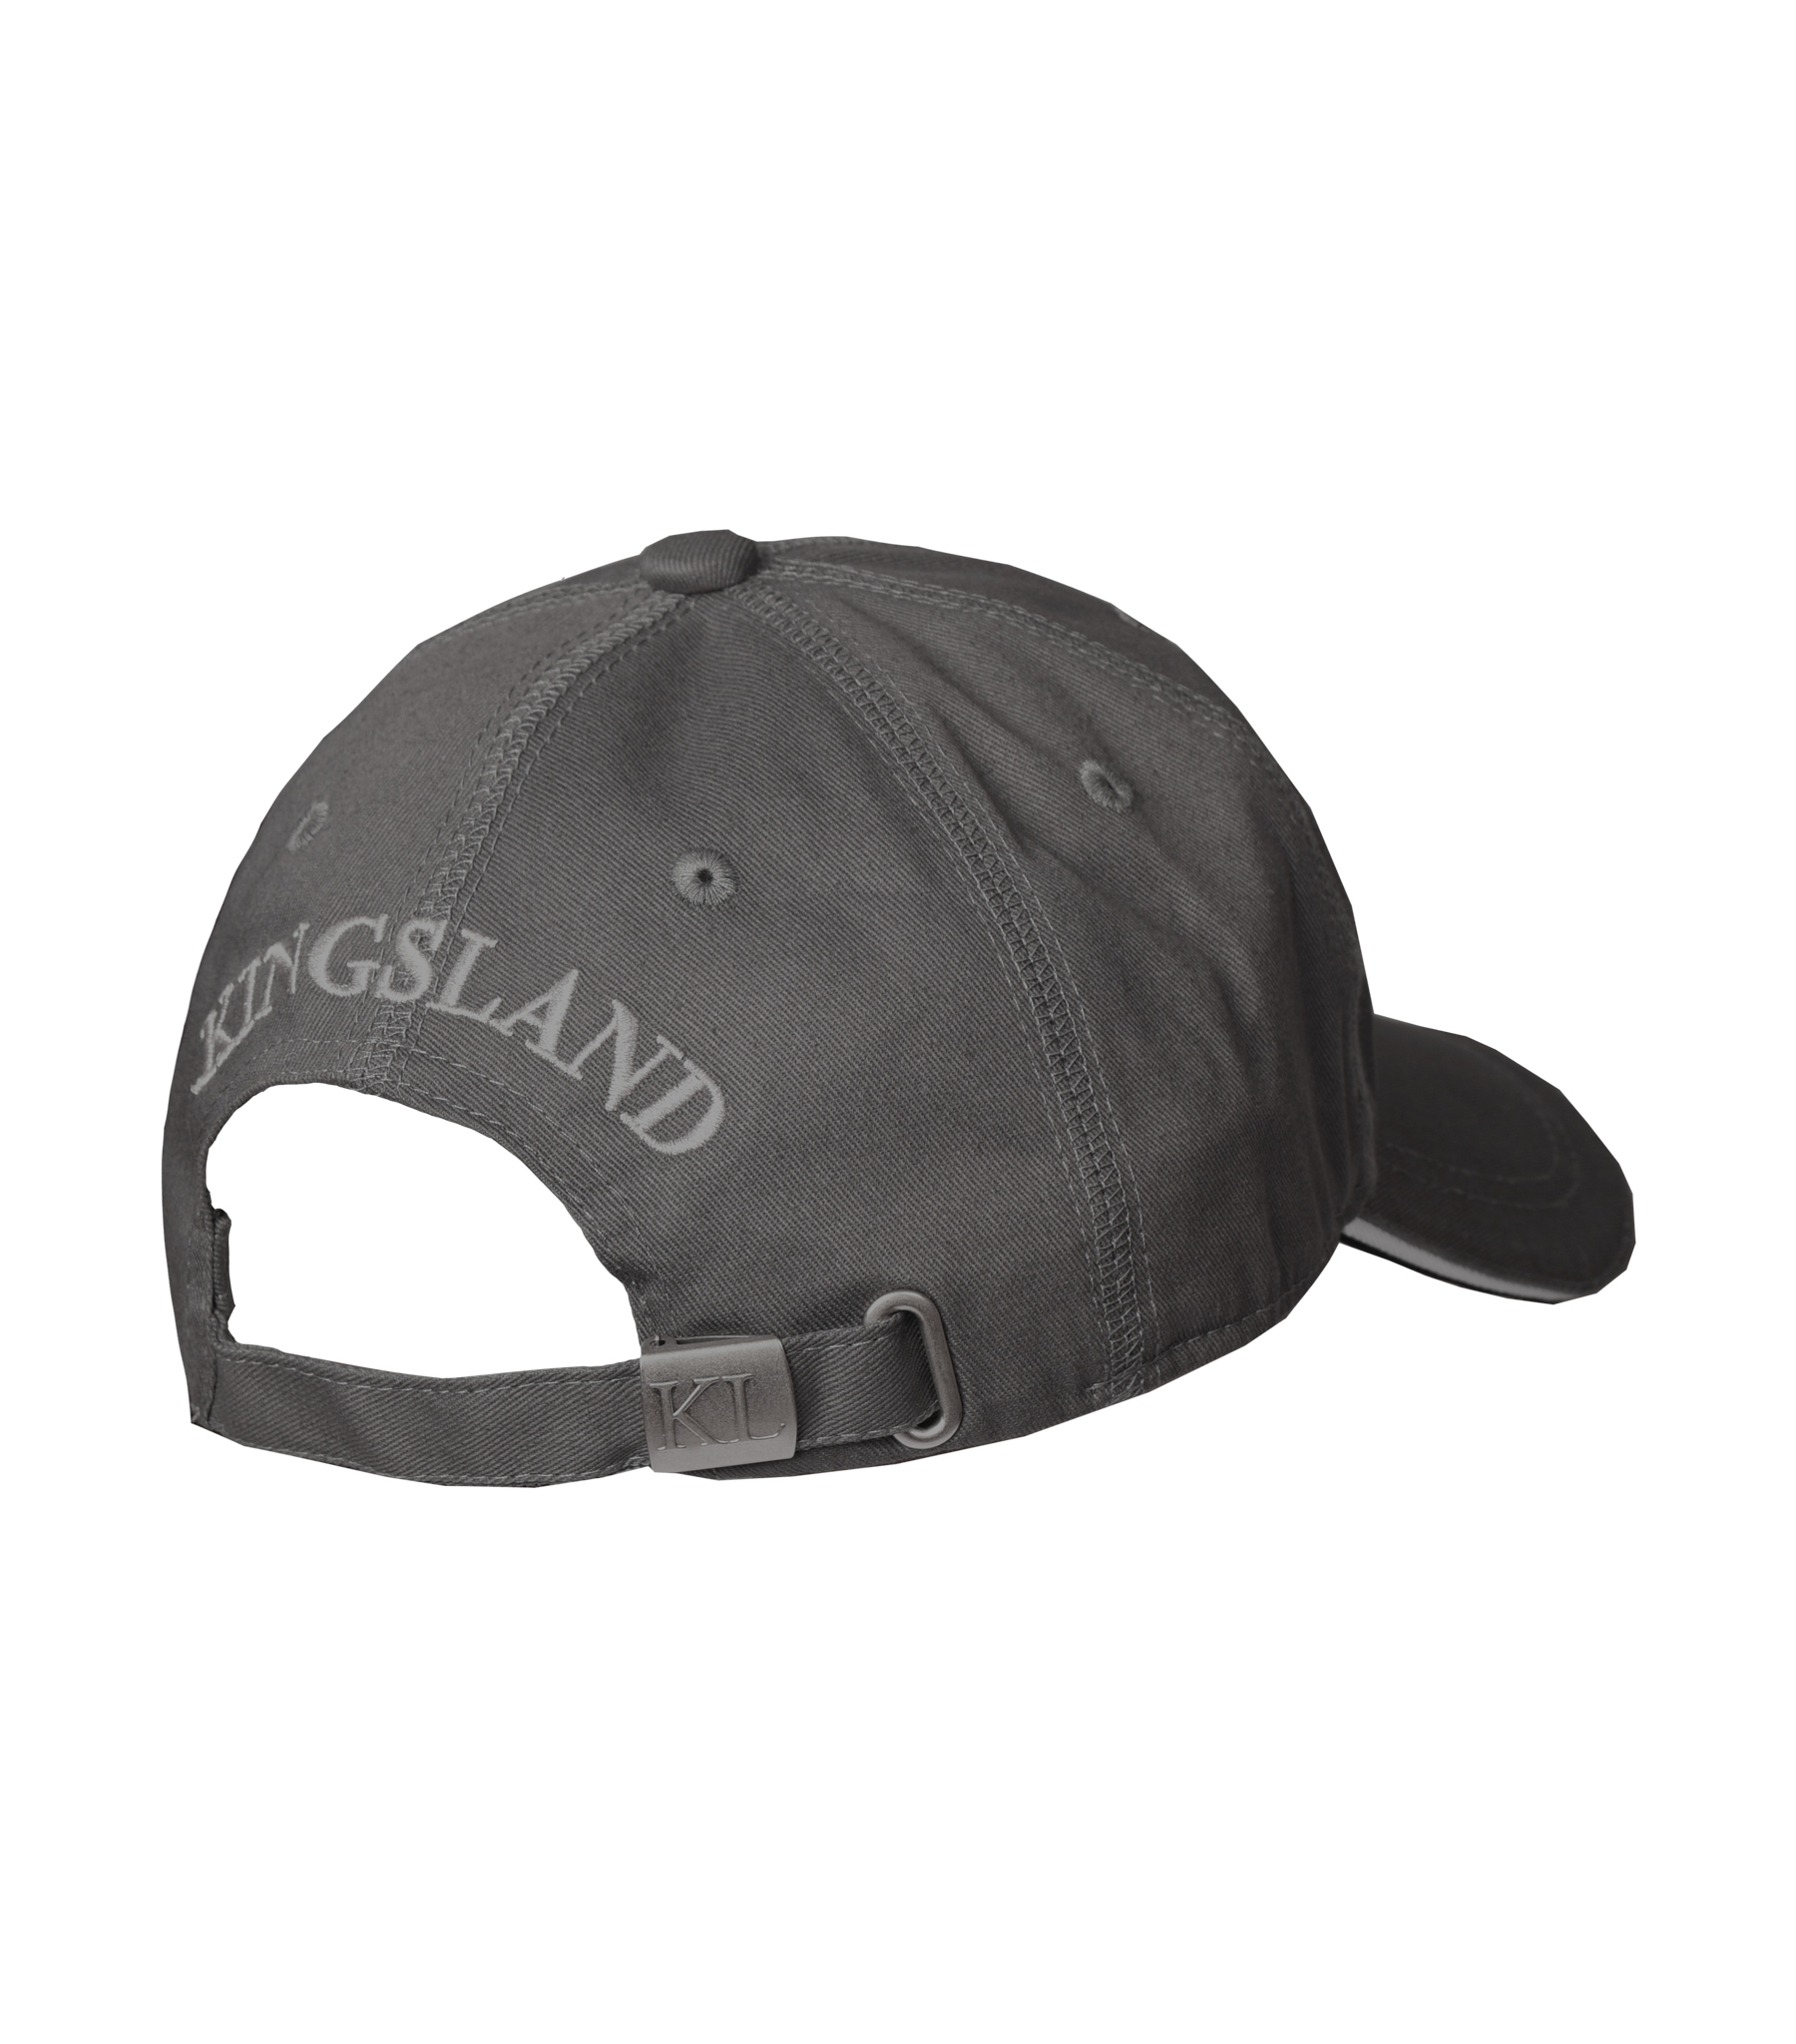 KINGSLAND Unisex Classic Limited Cap, Basecap - grey - onesize - 4